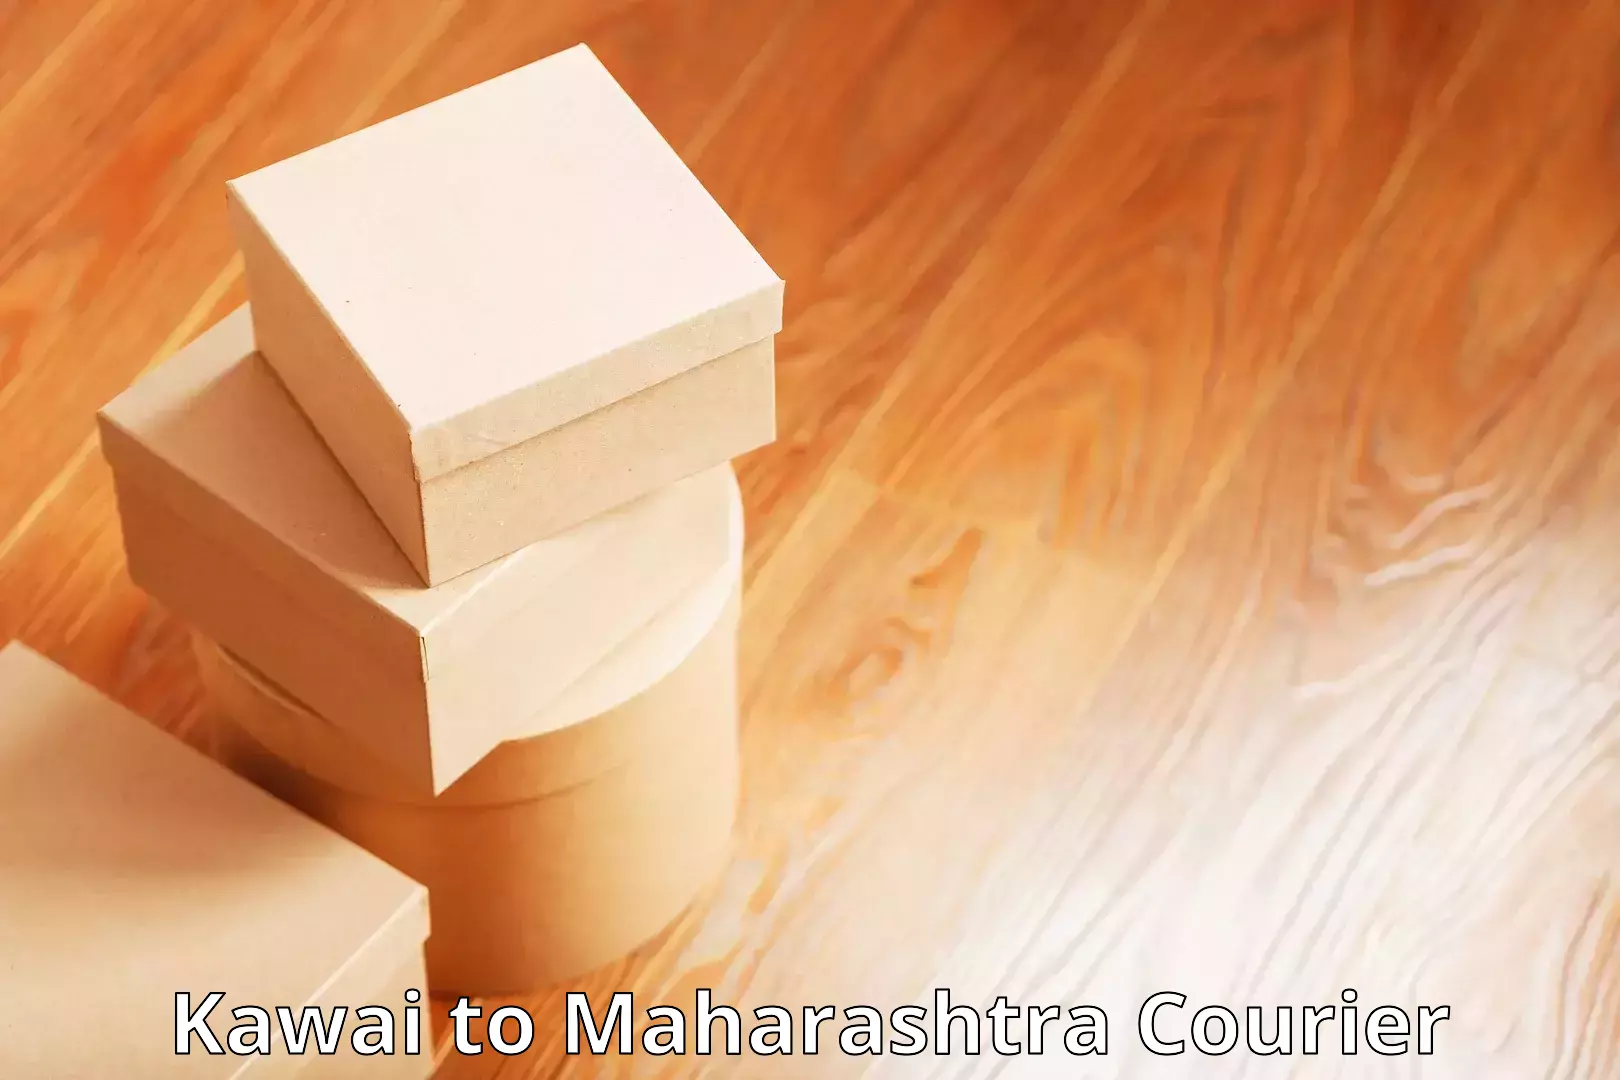 Innovative shipping solutions Kawai to Maharashtra